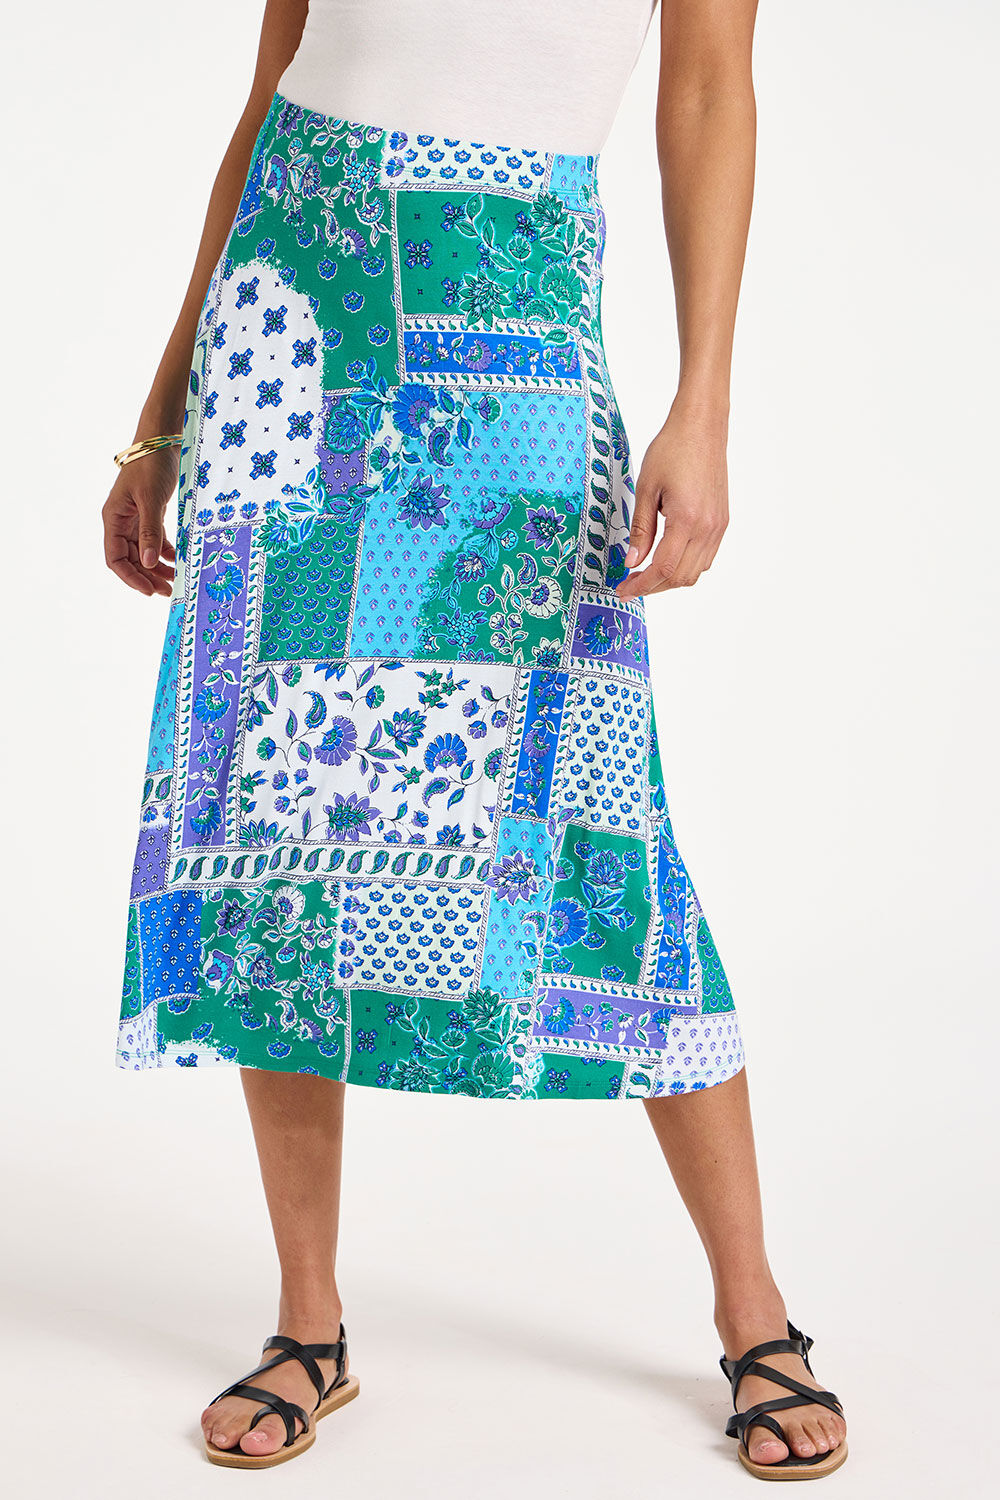 Bonmarche Blue Patchwork Print Jersey Flippy Skirt, Size: 10